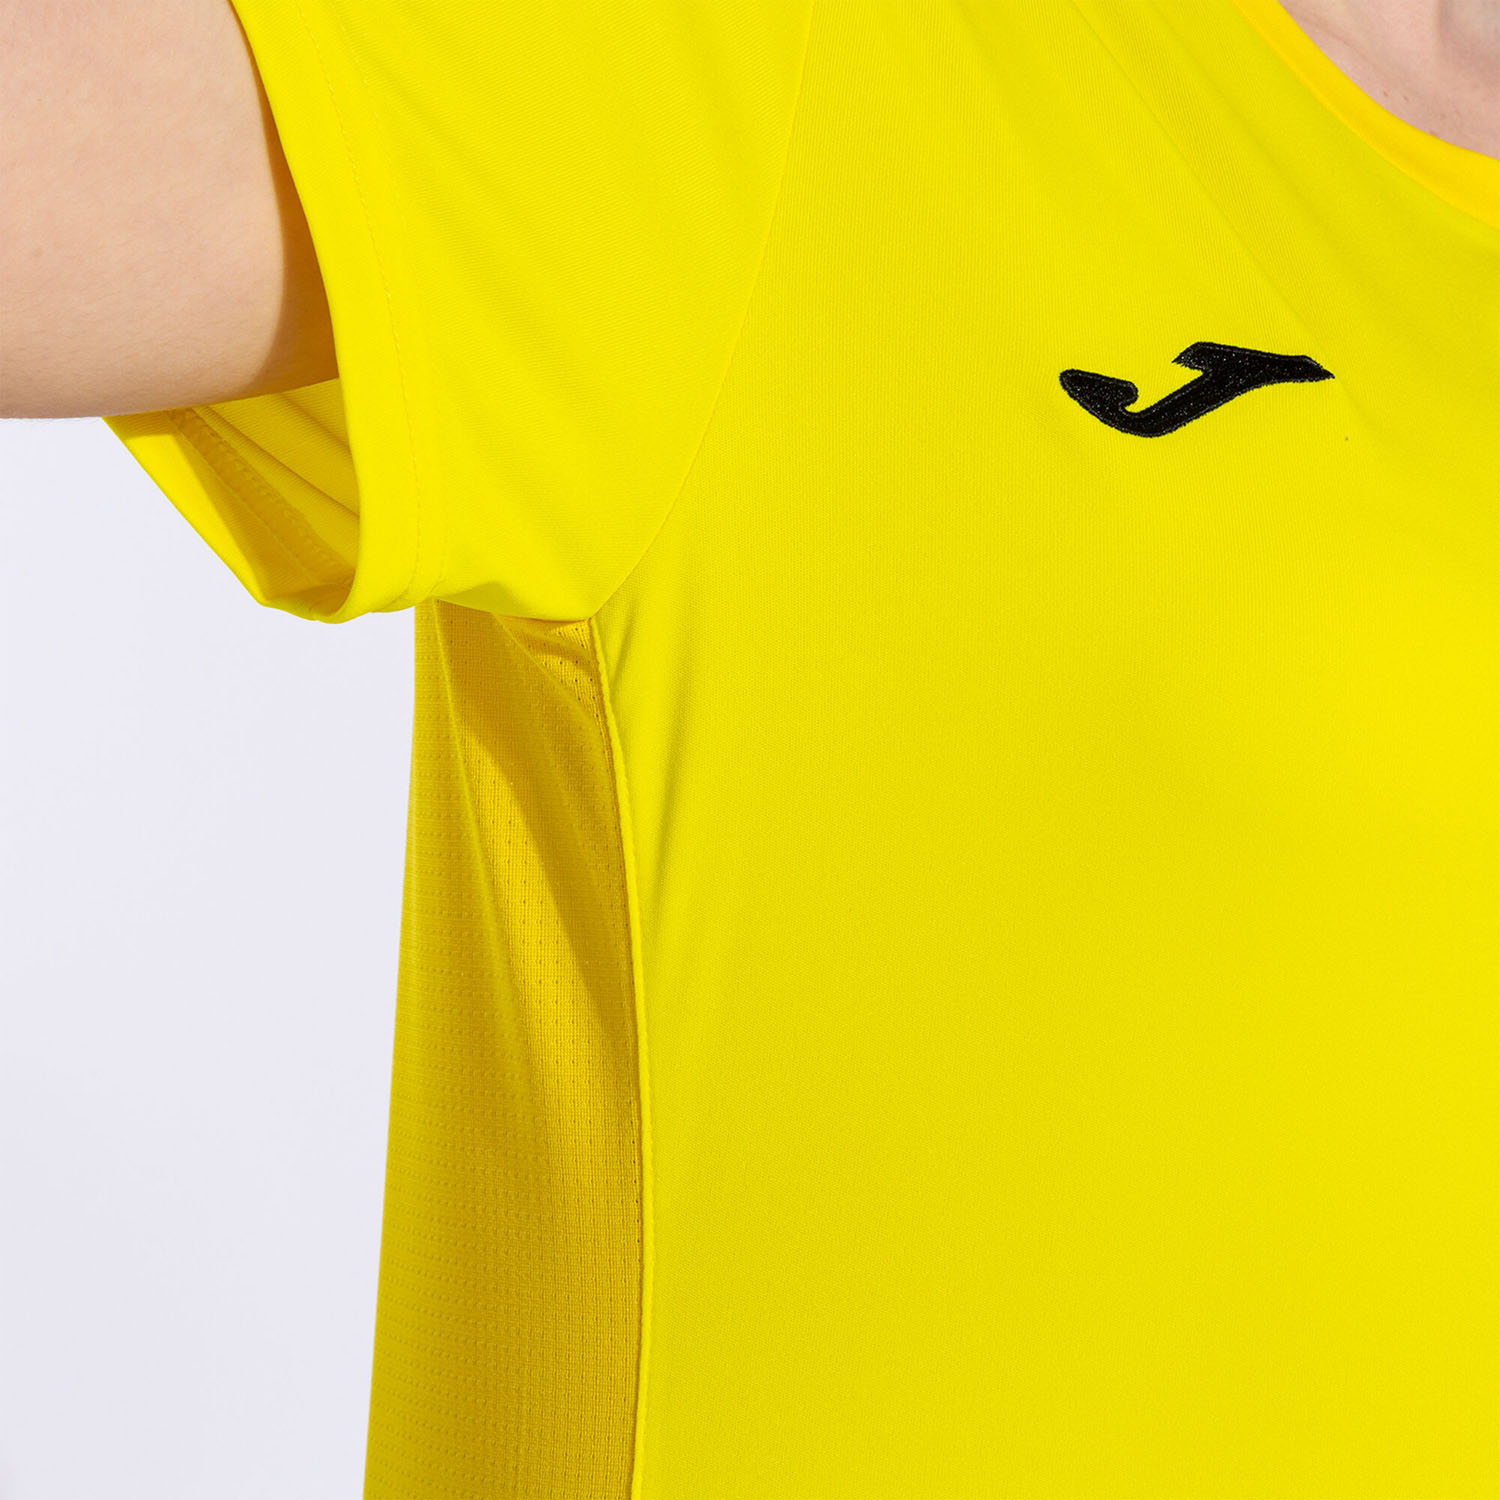 Joma Winner II T-Shirt - Yellow